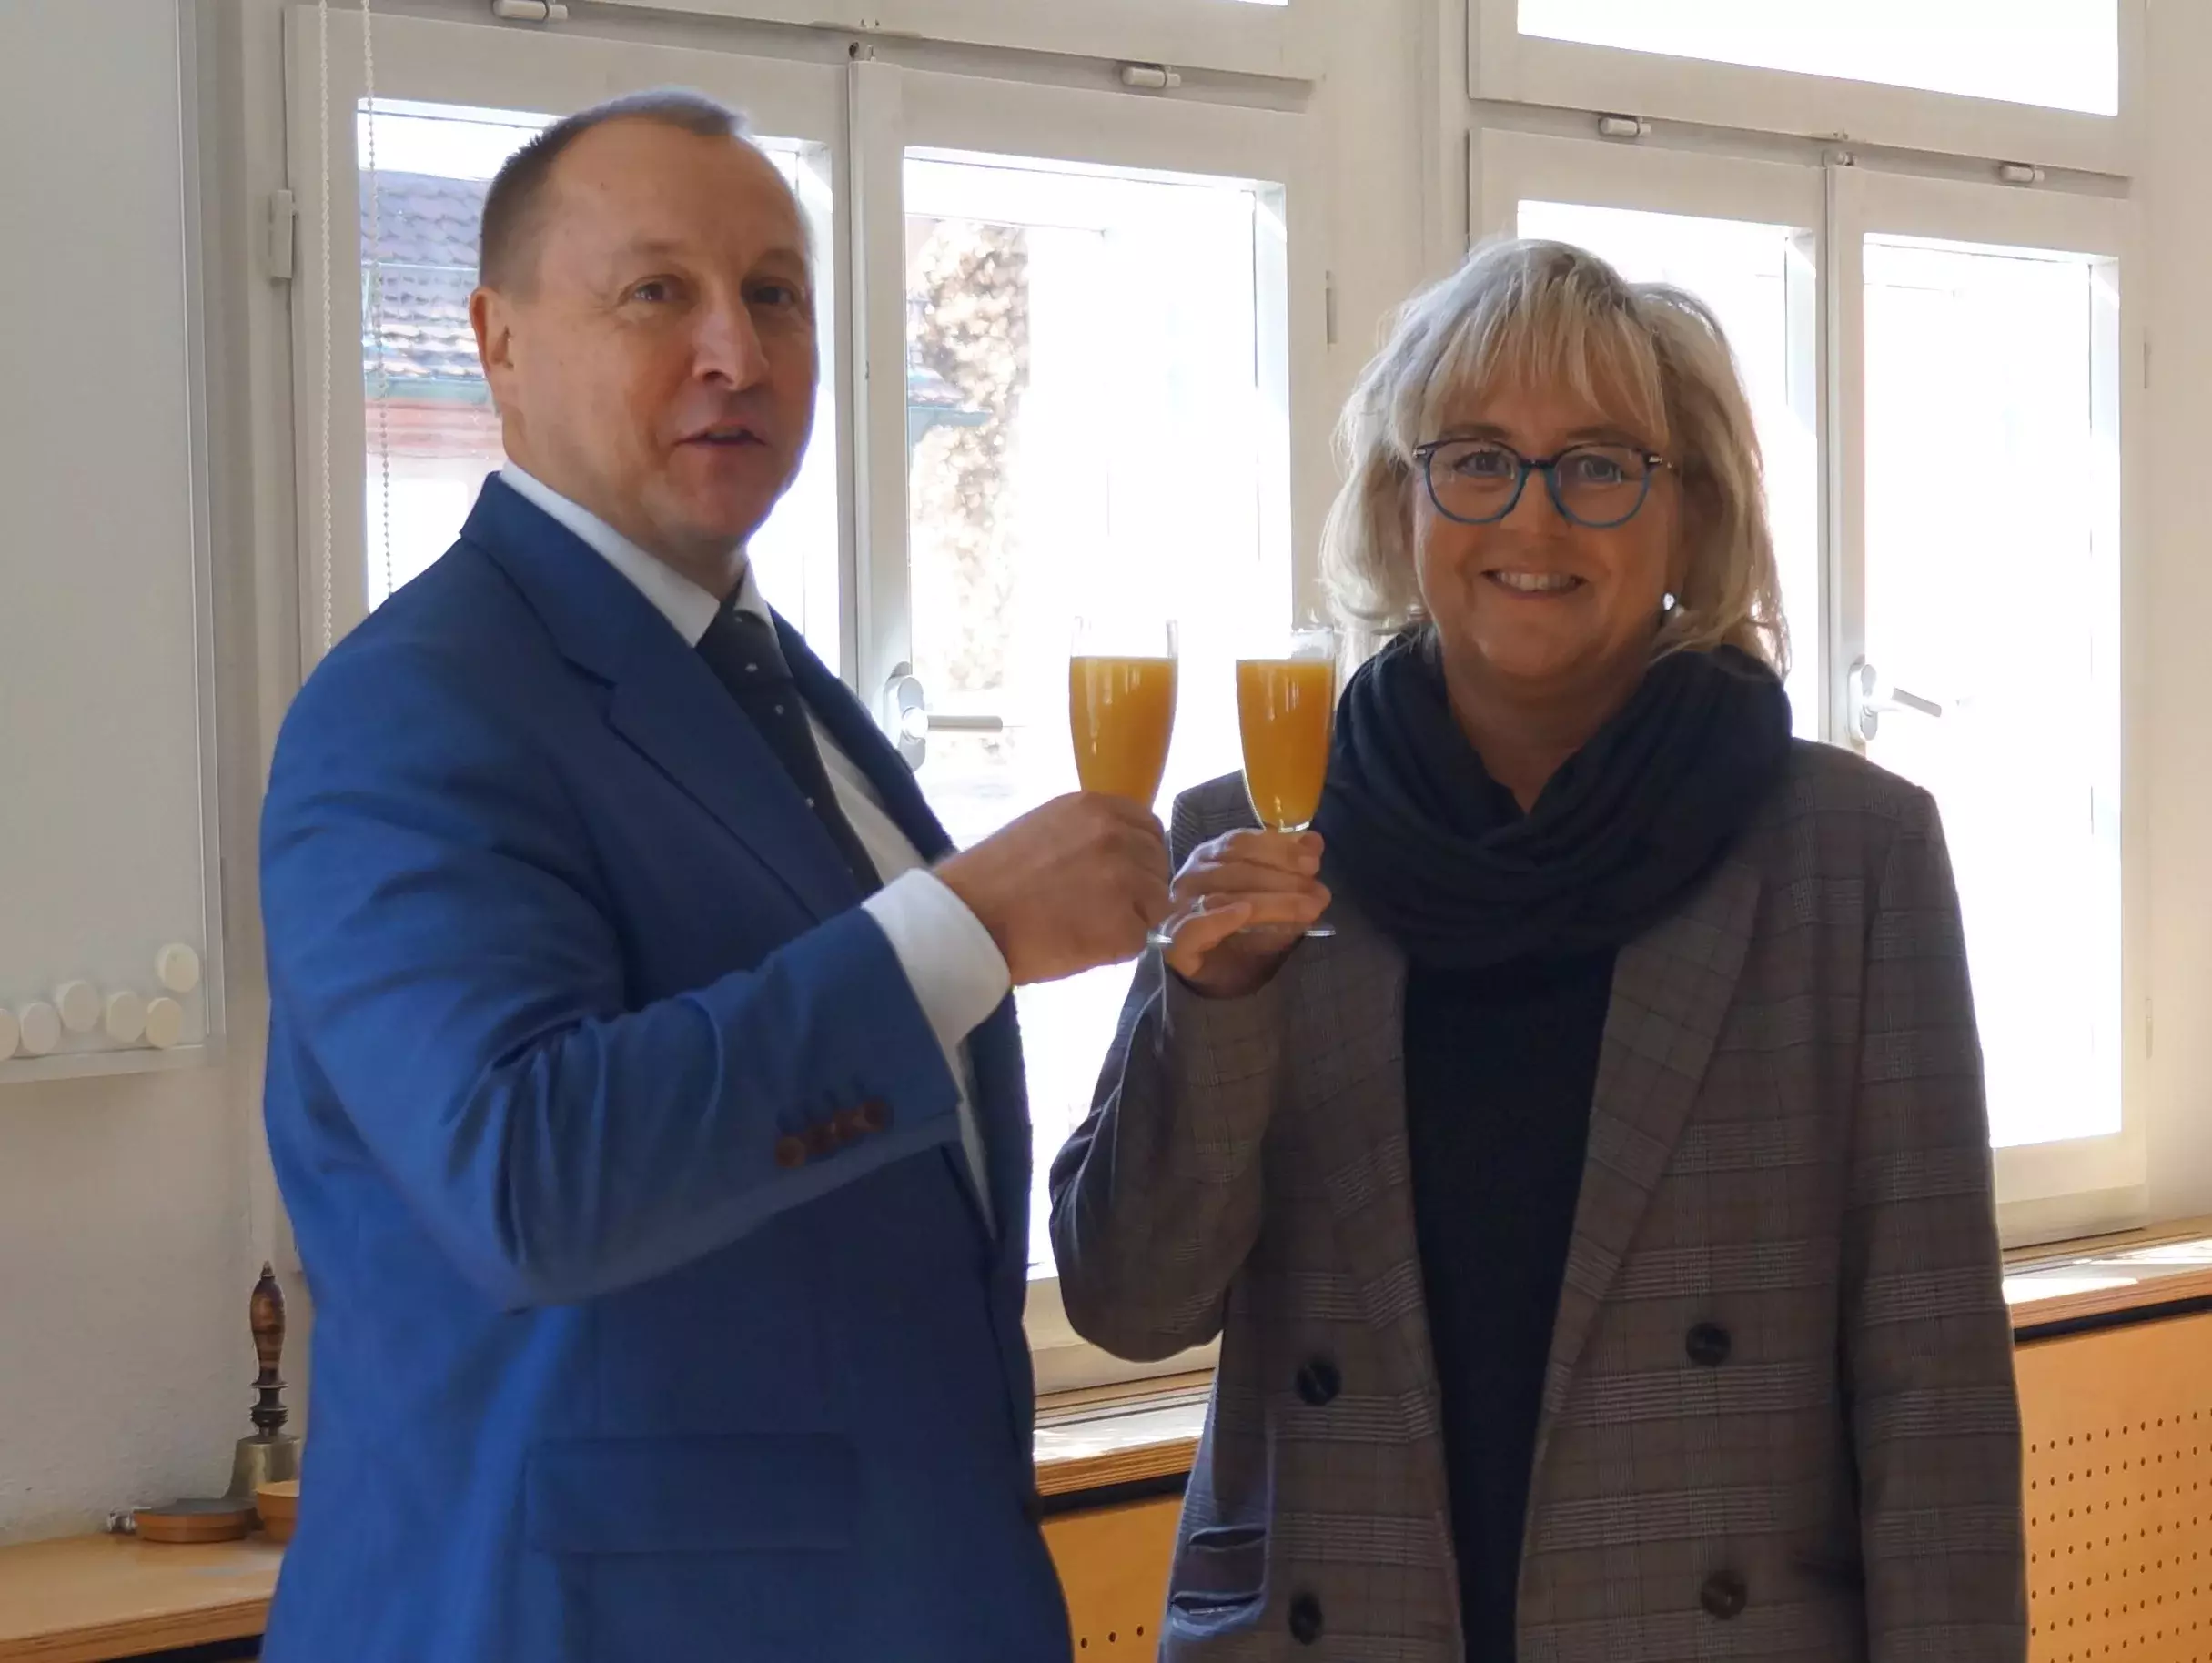 Jörg Kotzur und Christine Seehann stoßen mit einem Glas Orangensaft an und lächeln in die Kamera.